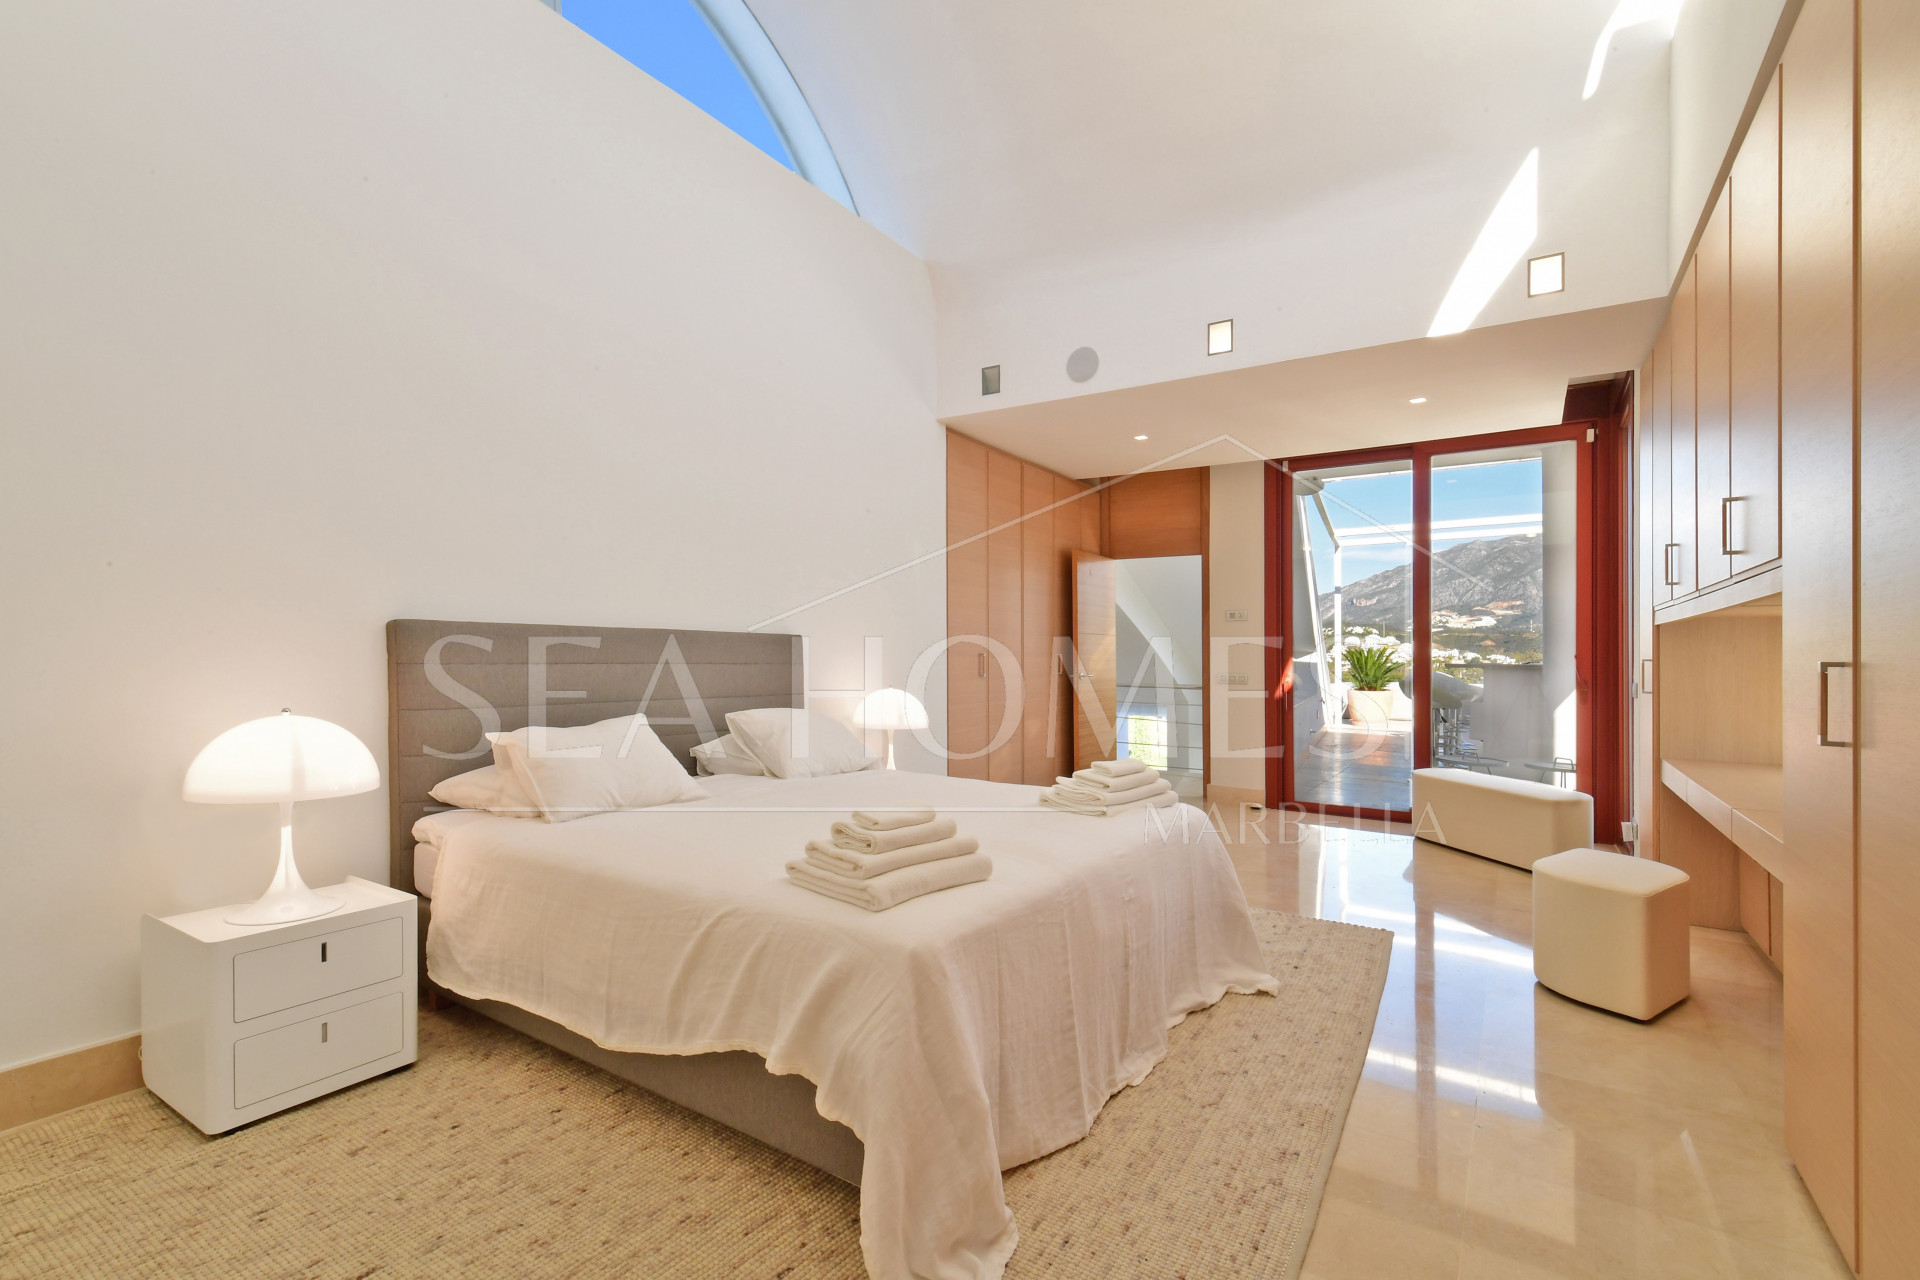 7 Bedroom Villa in Nueva Andalucía - 5 minutes away from Puerto Banús!